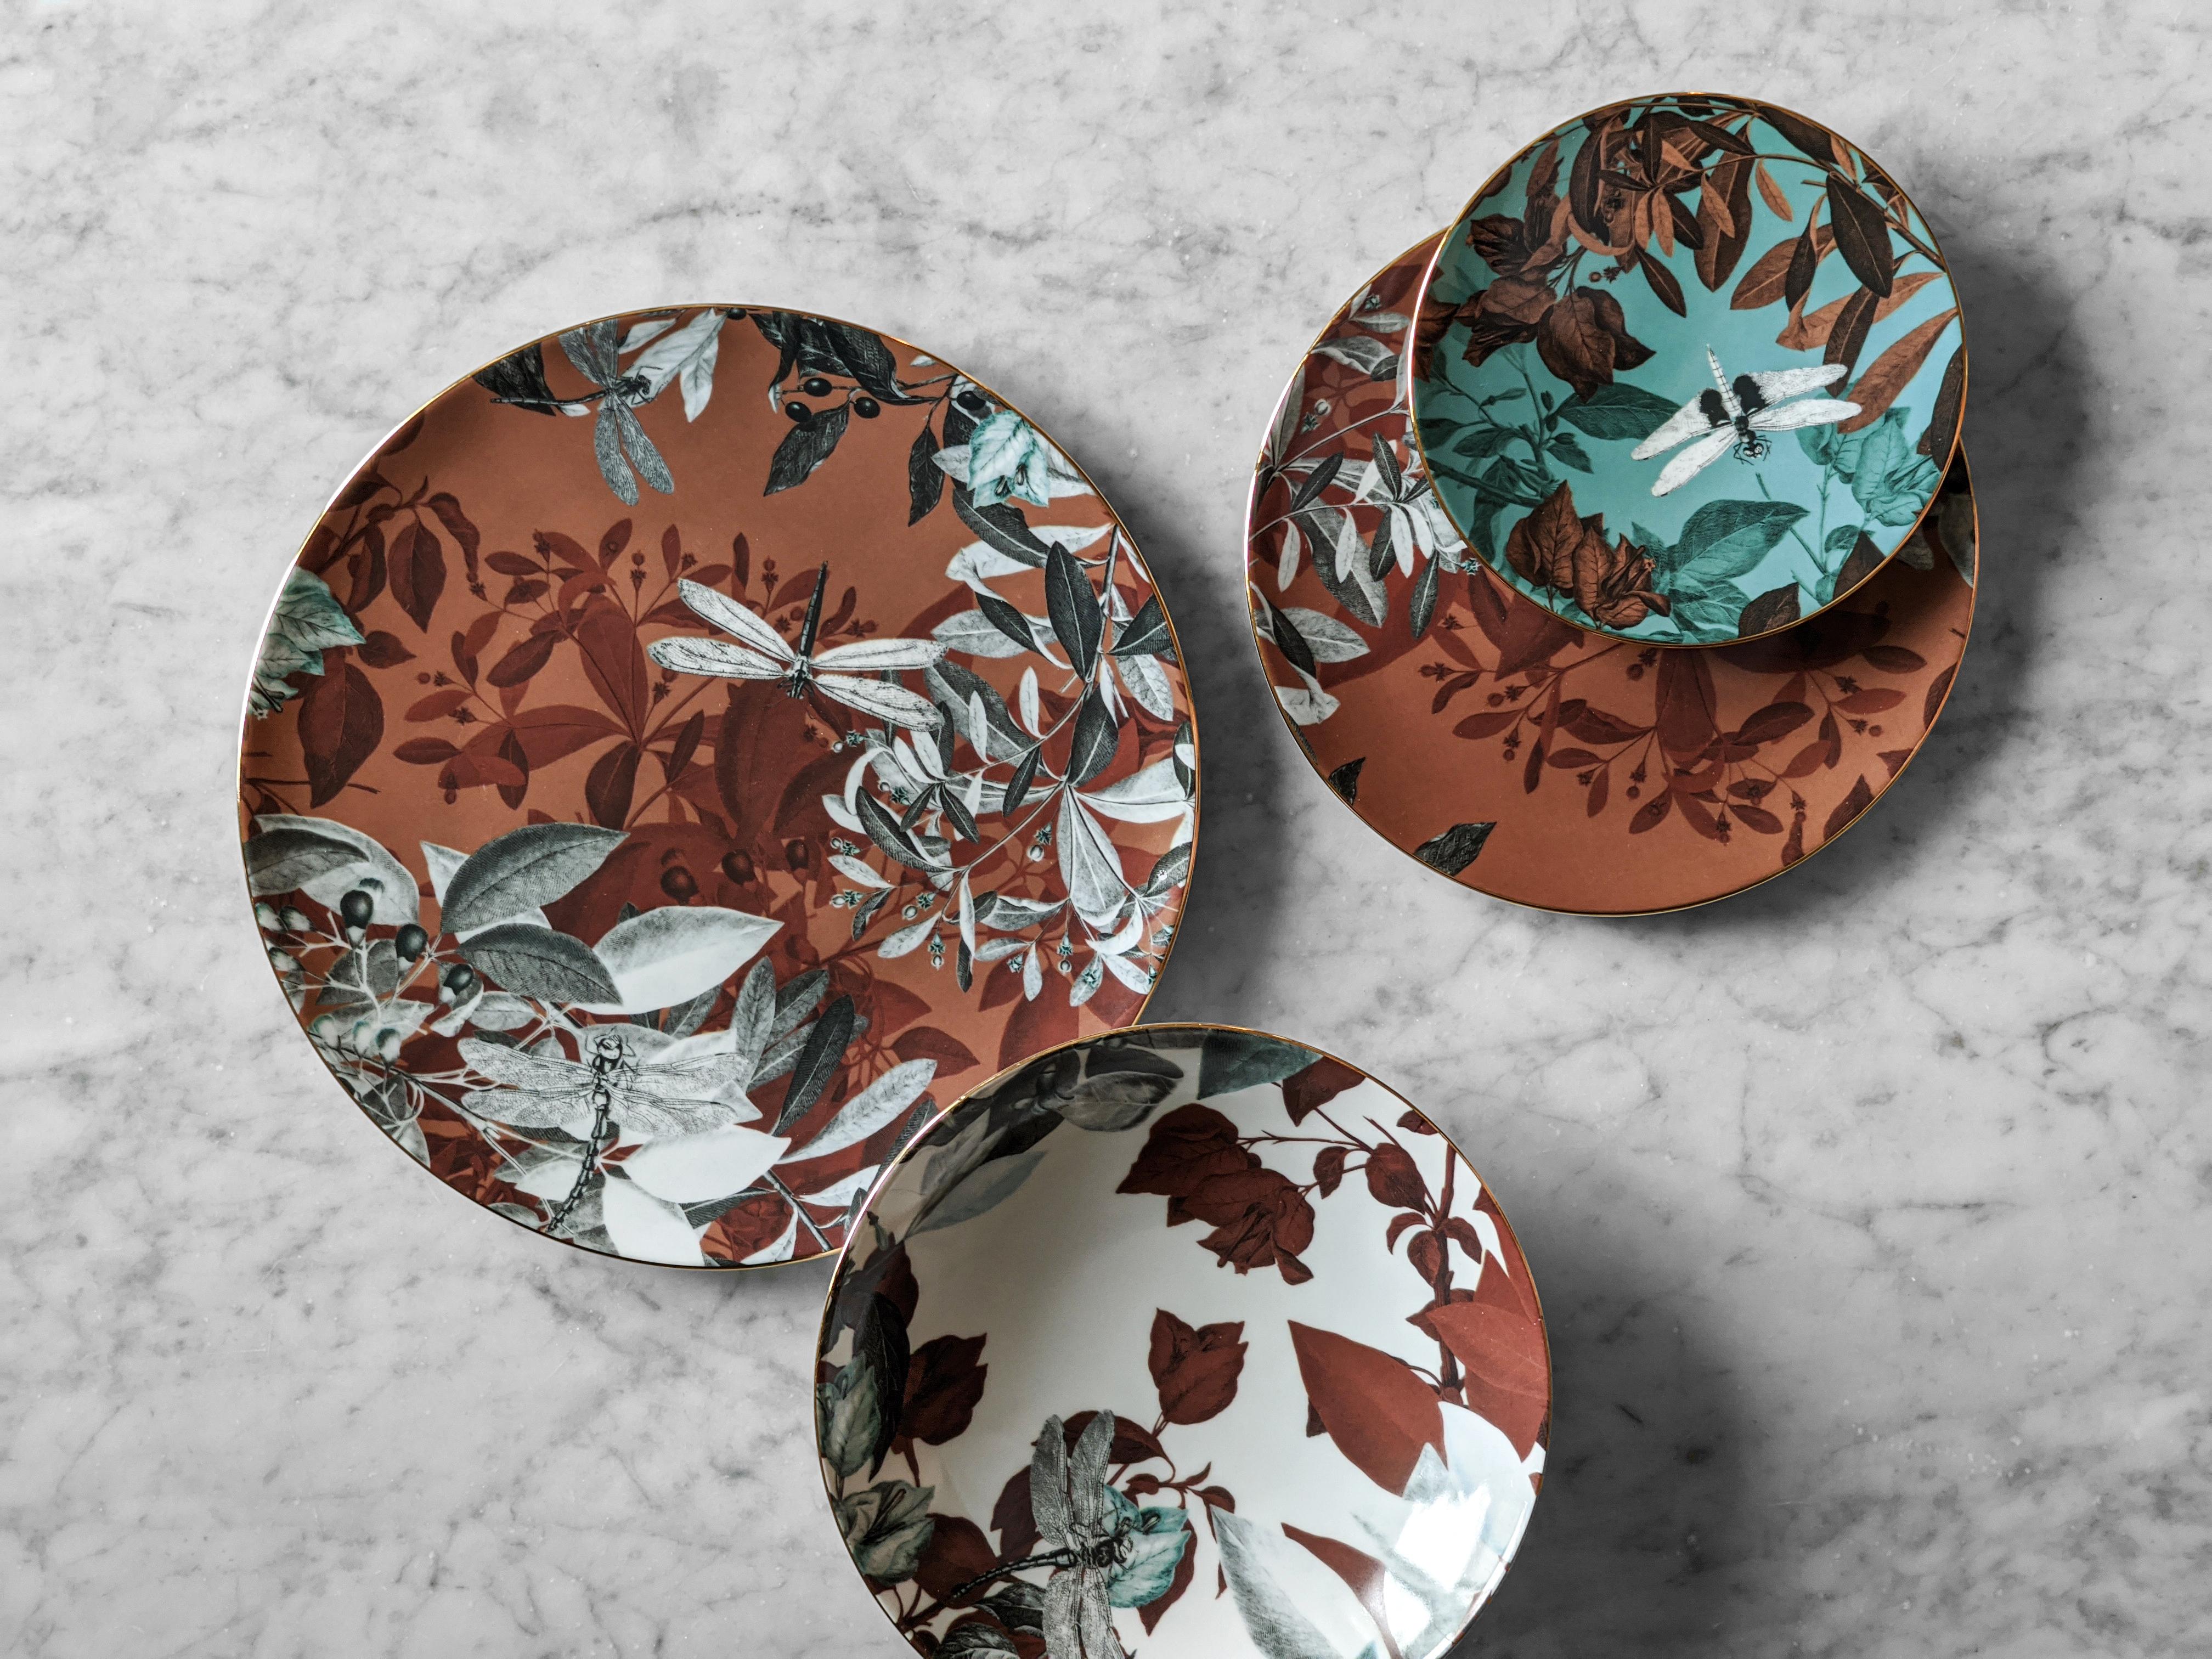 Black Dragon, Six Contemporary Porcelain soup plates with Decorative Design For Sale 3